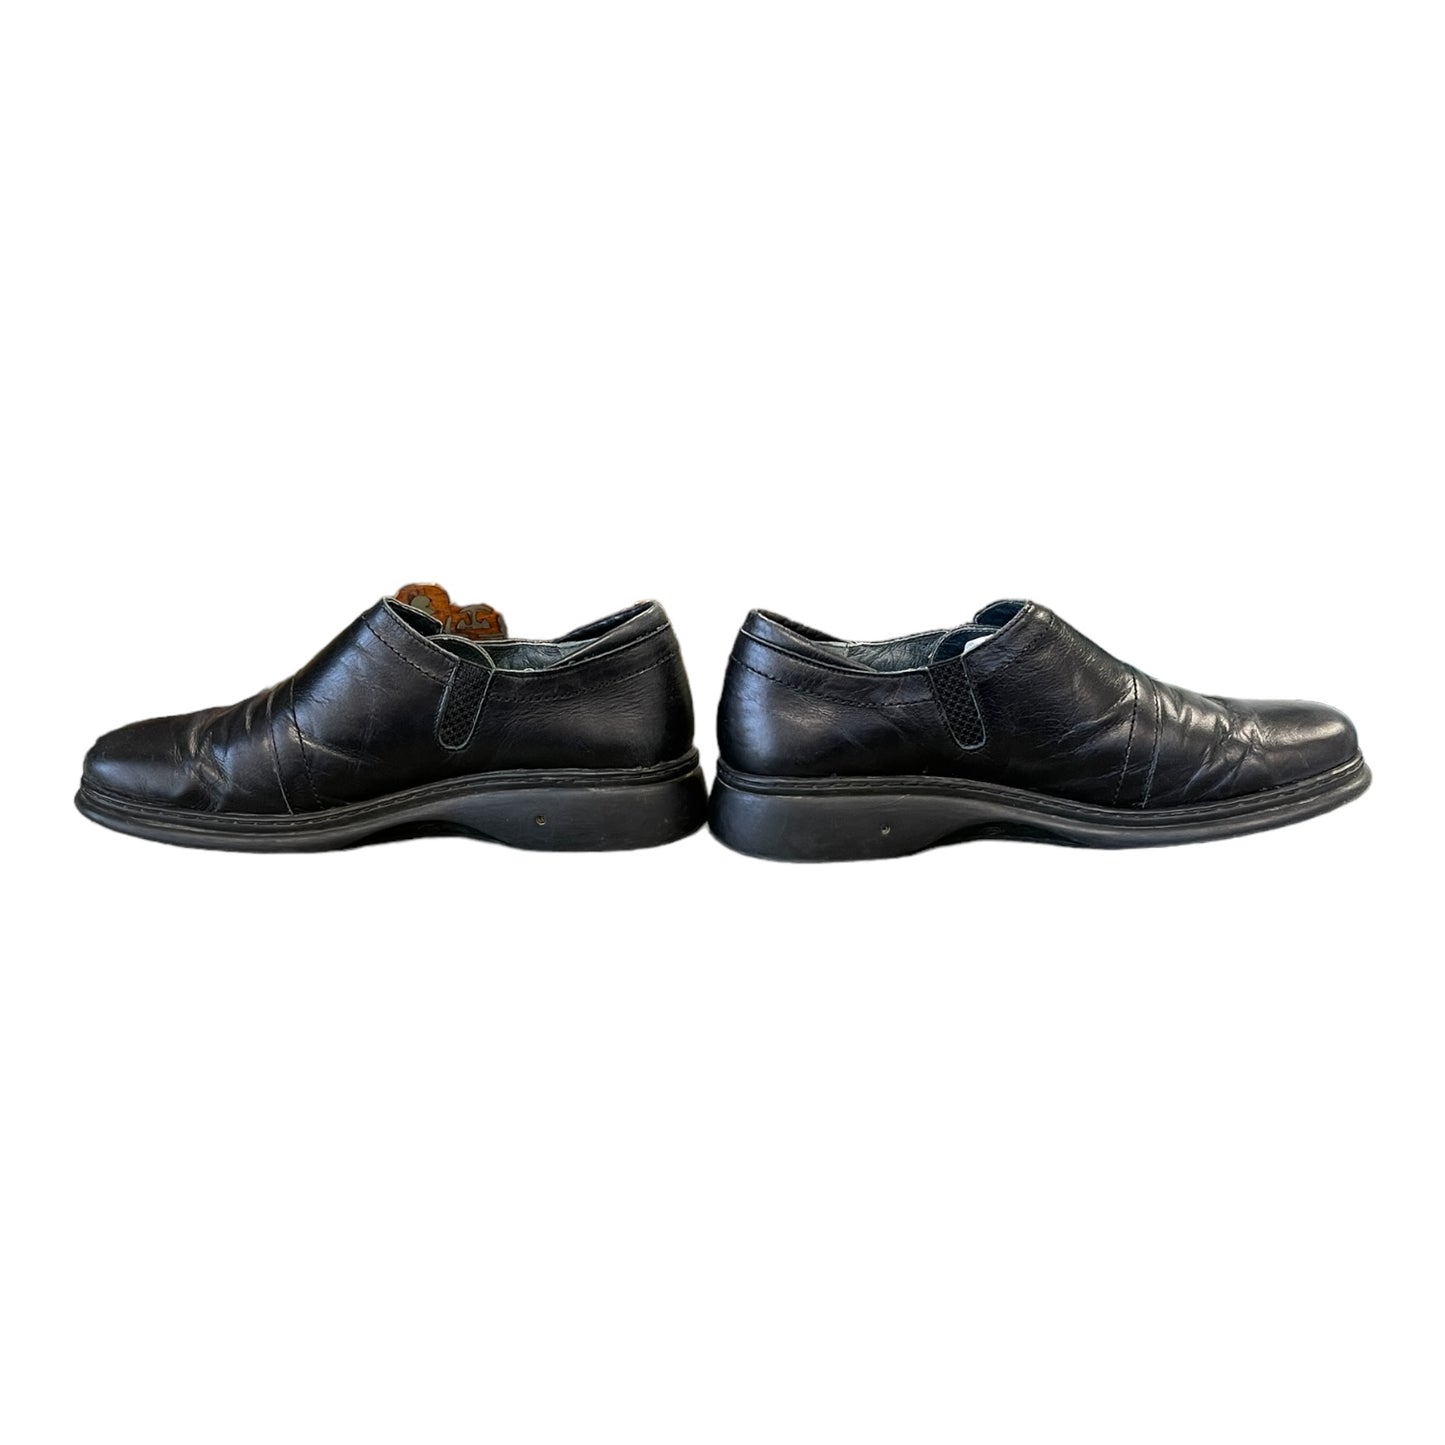 Helle Woman's Black Slip-on Shoe Size 42